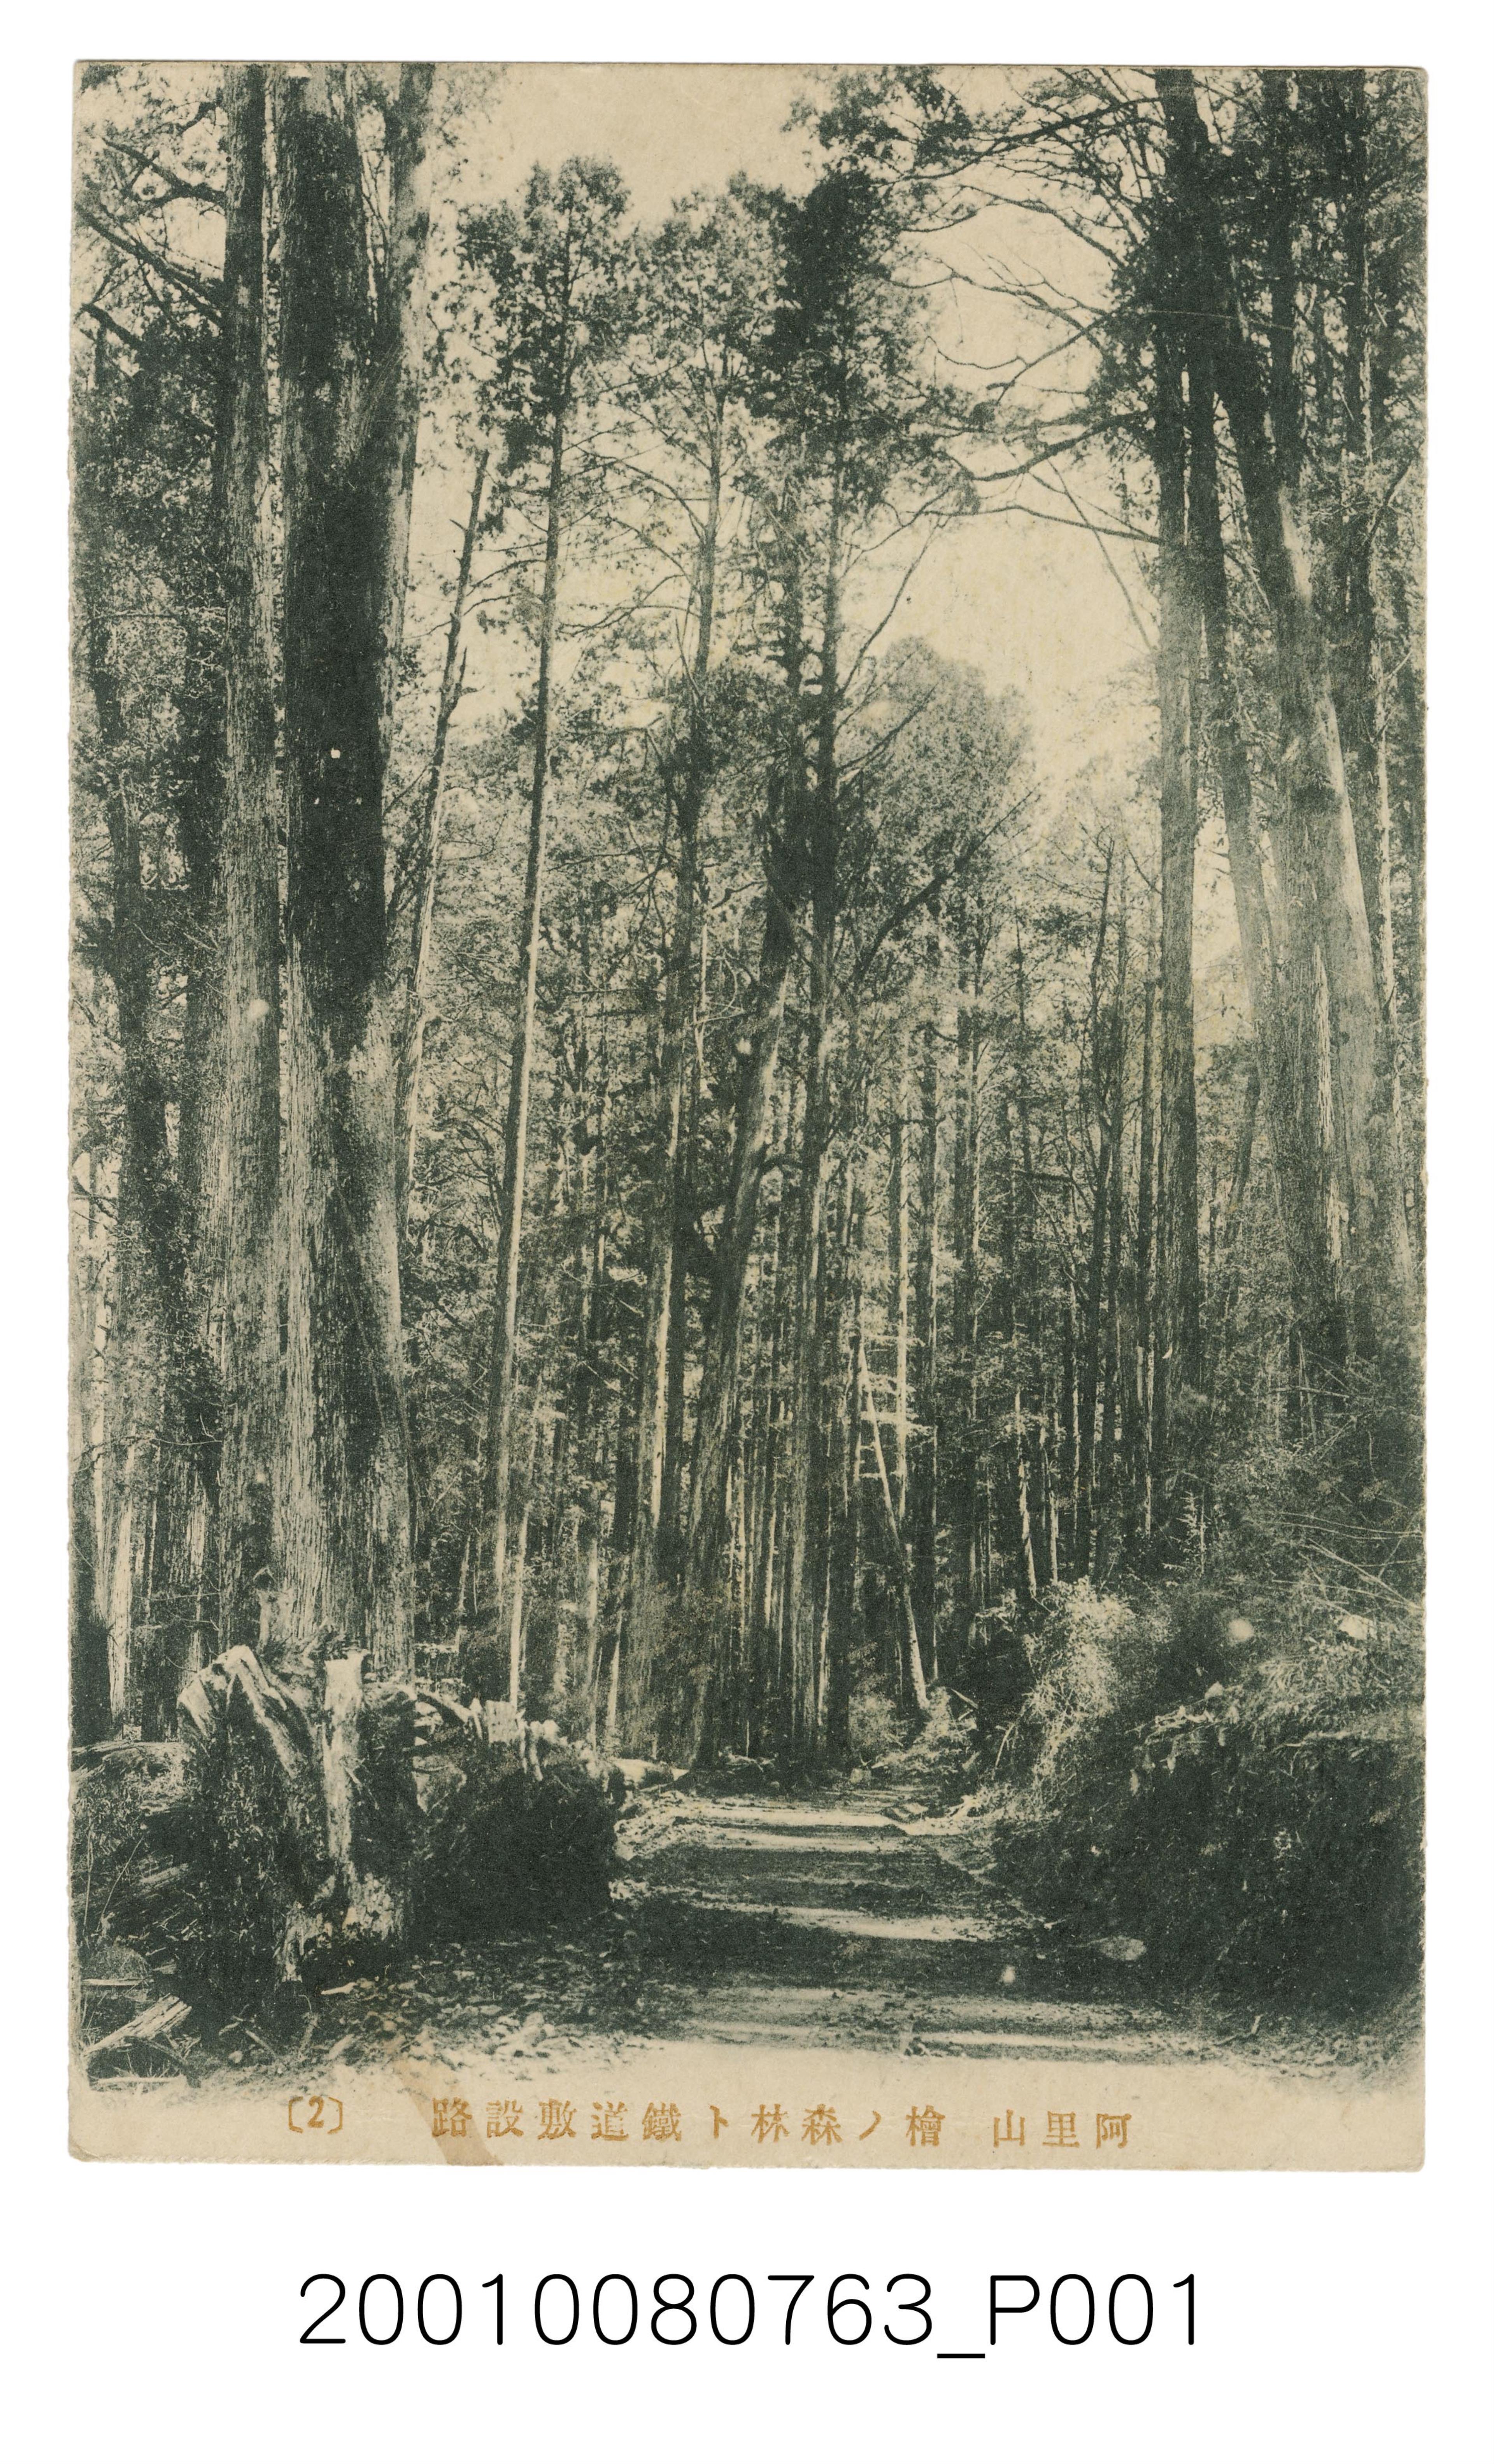 阿里山檜木森林與鐵軌鋪設道路之二 (共2張)